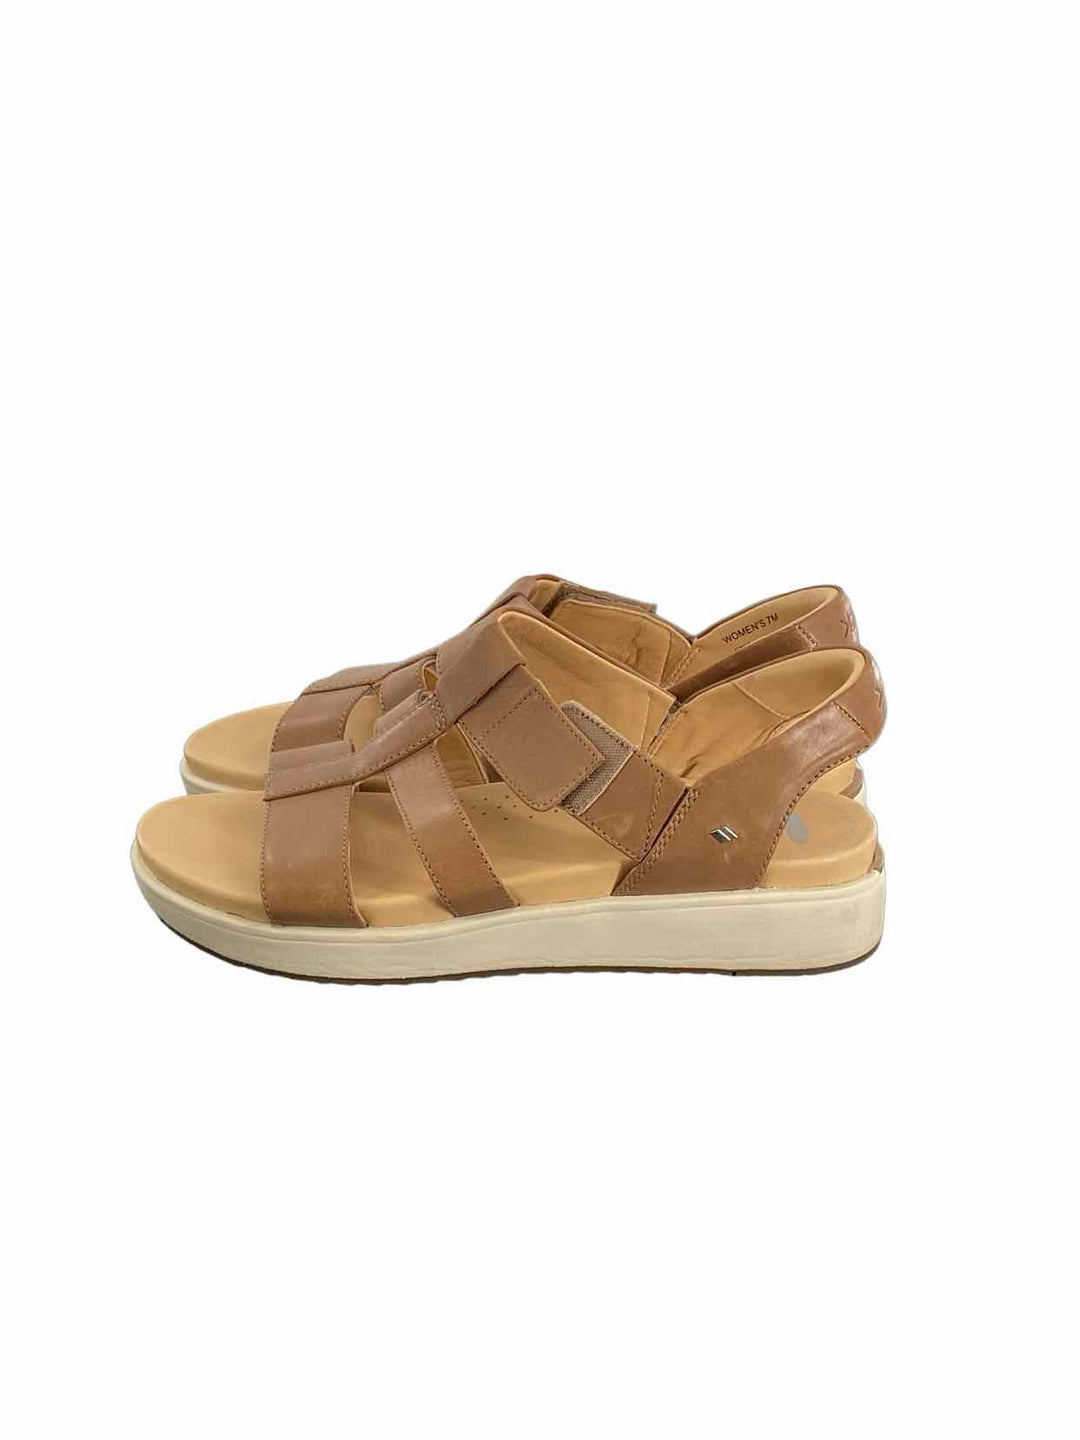 Kizik Shoe Size 7 Brown Sandals